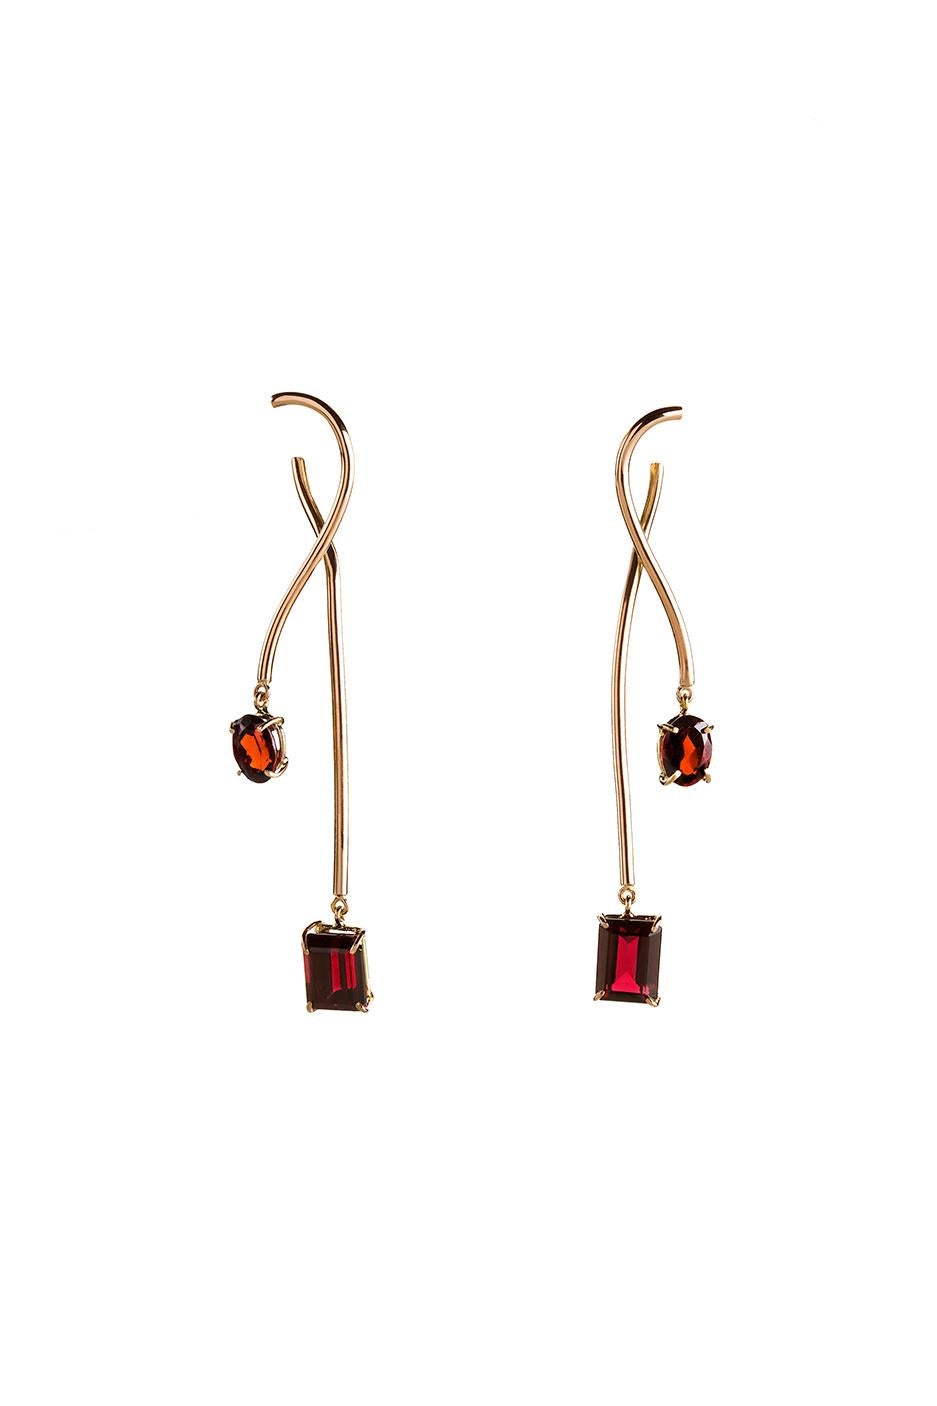 Boucles d'oreilles pendantes contemporaines en or rose 18 carats et grenat rouge 
Les boucles d'oreilles 